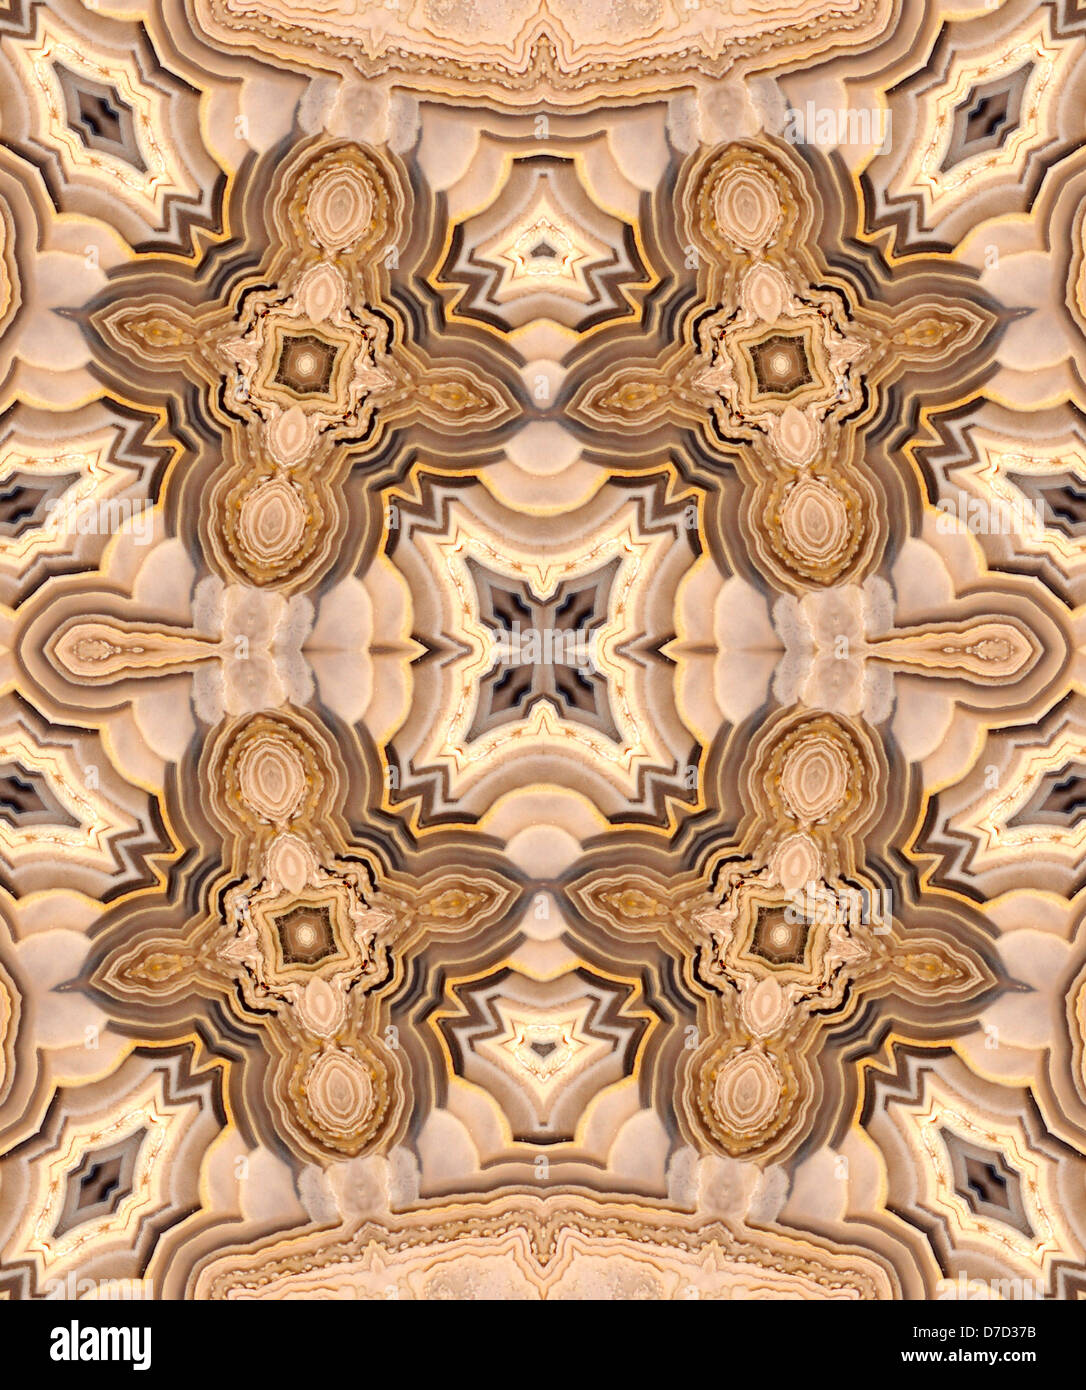 Tranche d'Agate polie (opaque, forme à grain fin de calcédoine) motif symétrique faite par la répétition de l'image Banque D'Images